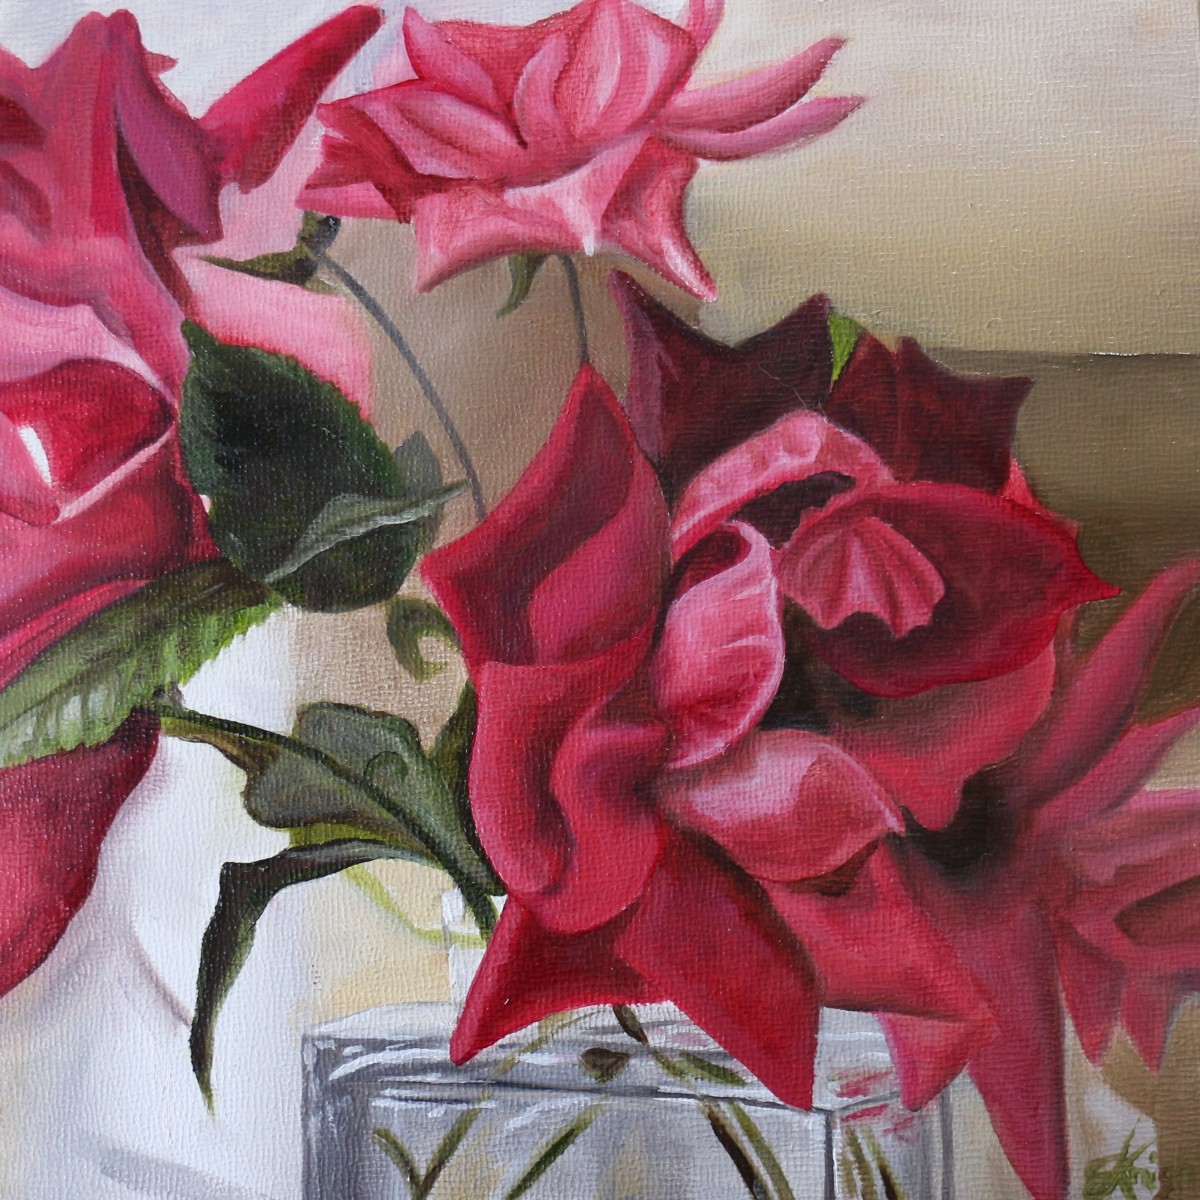 Roses in Glass Bottle II by Emma Knight 